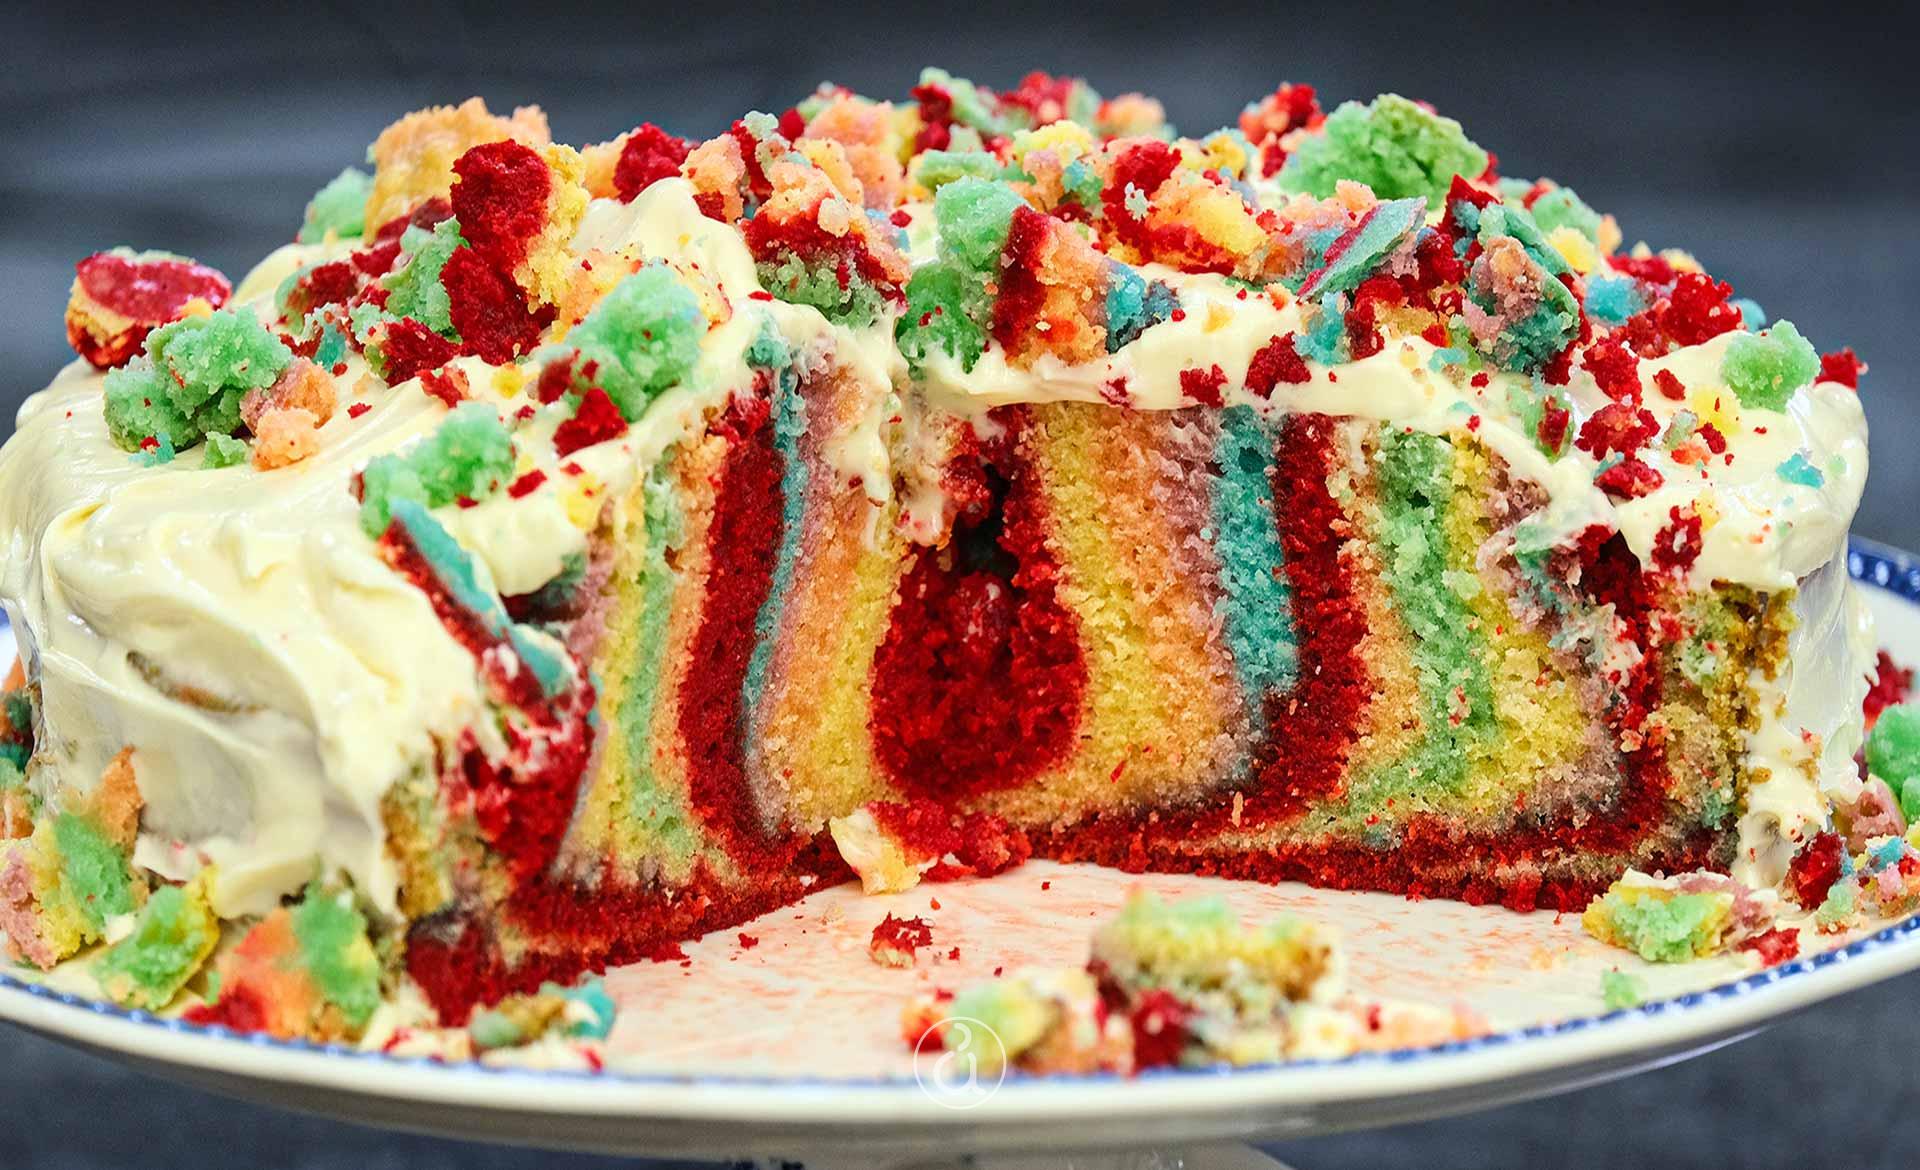 Κέικ ουράνιο τόξο (Rainbow cake) σαν τούρτα